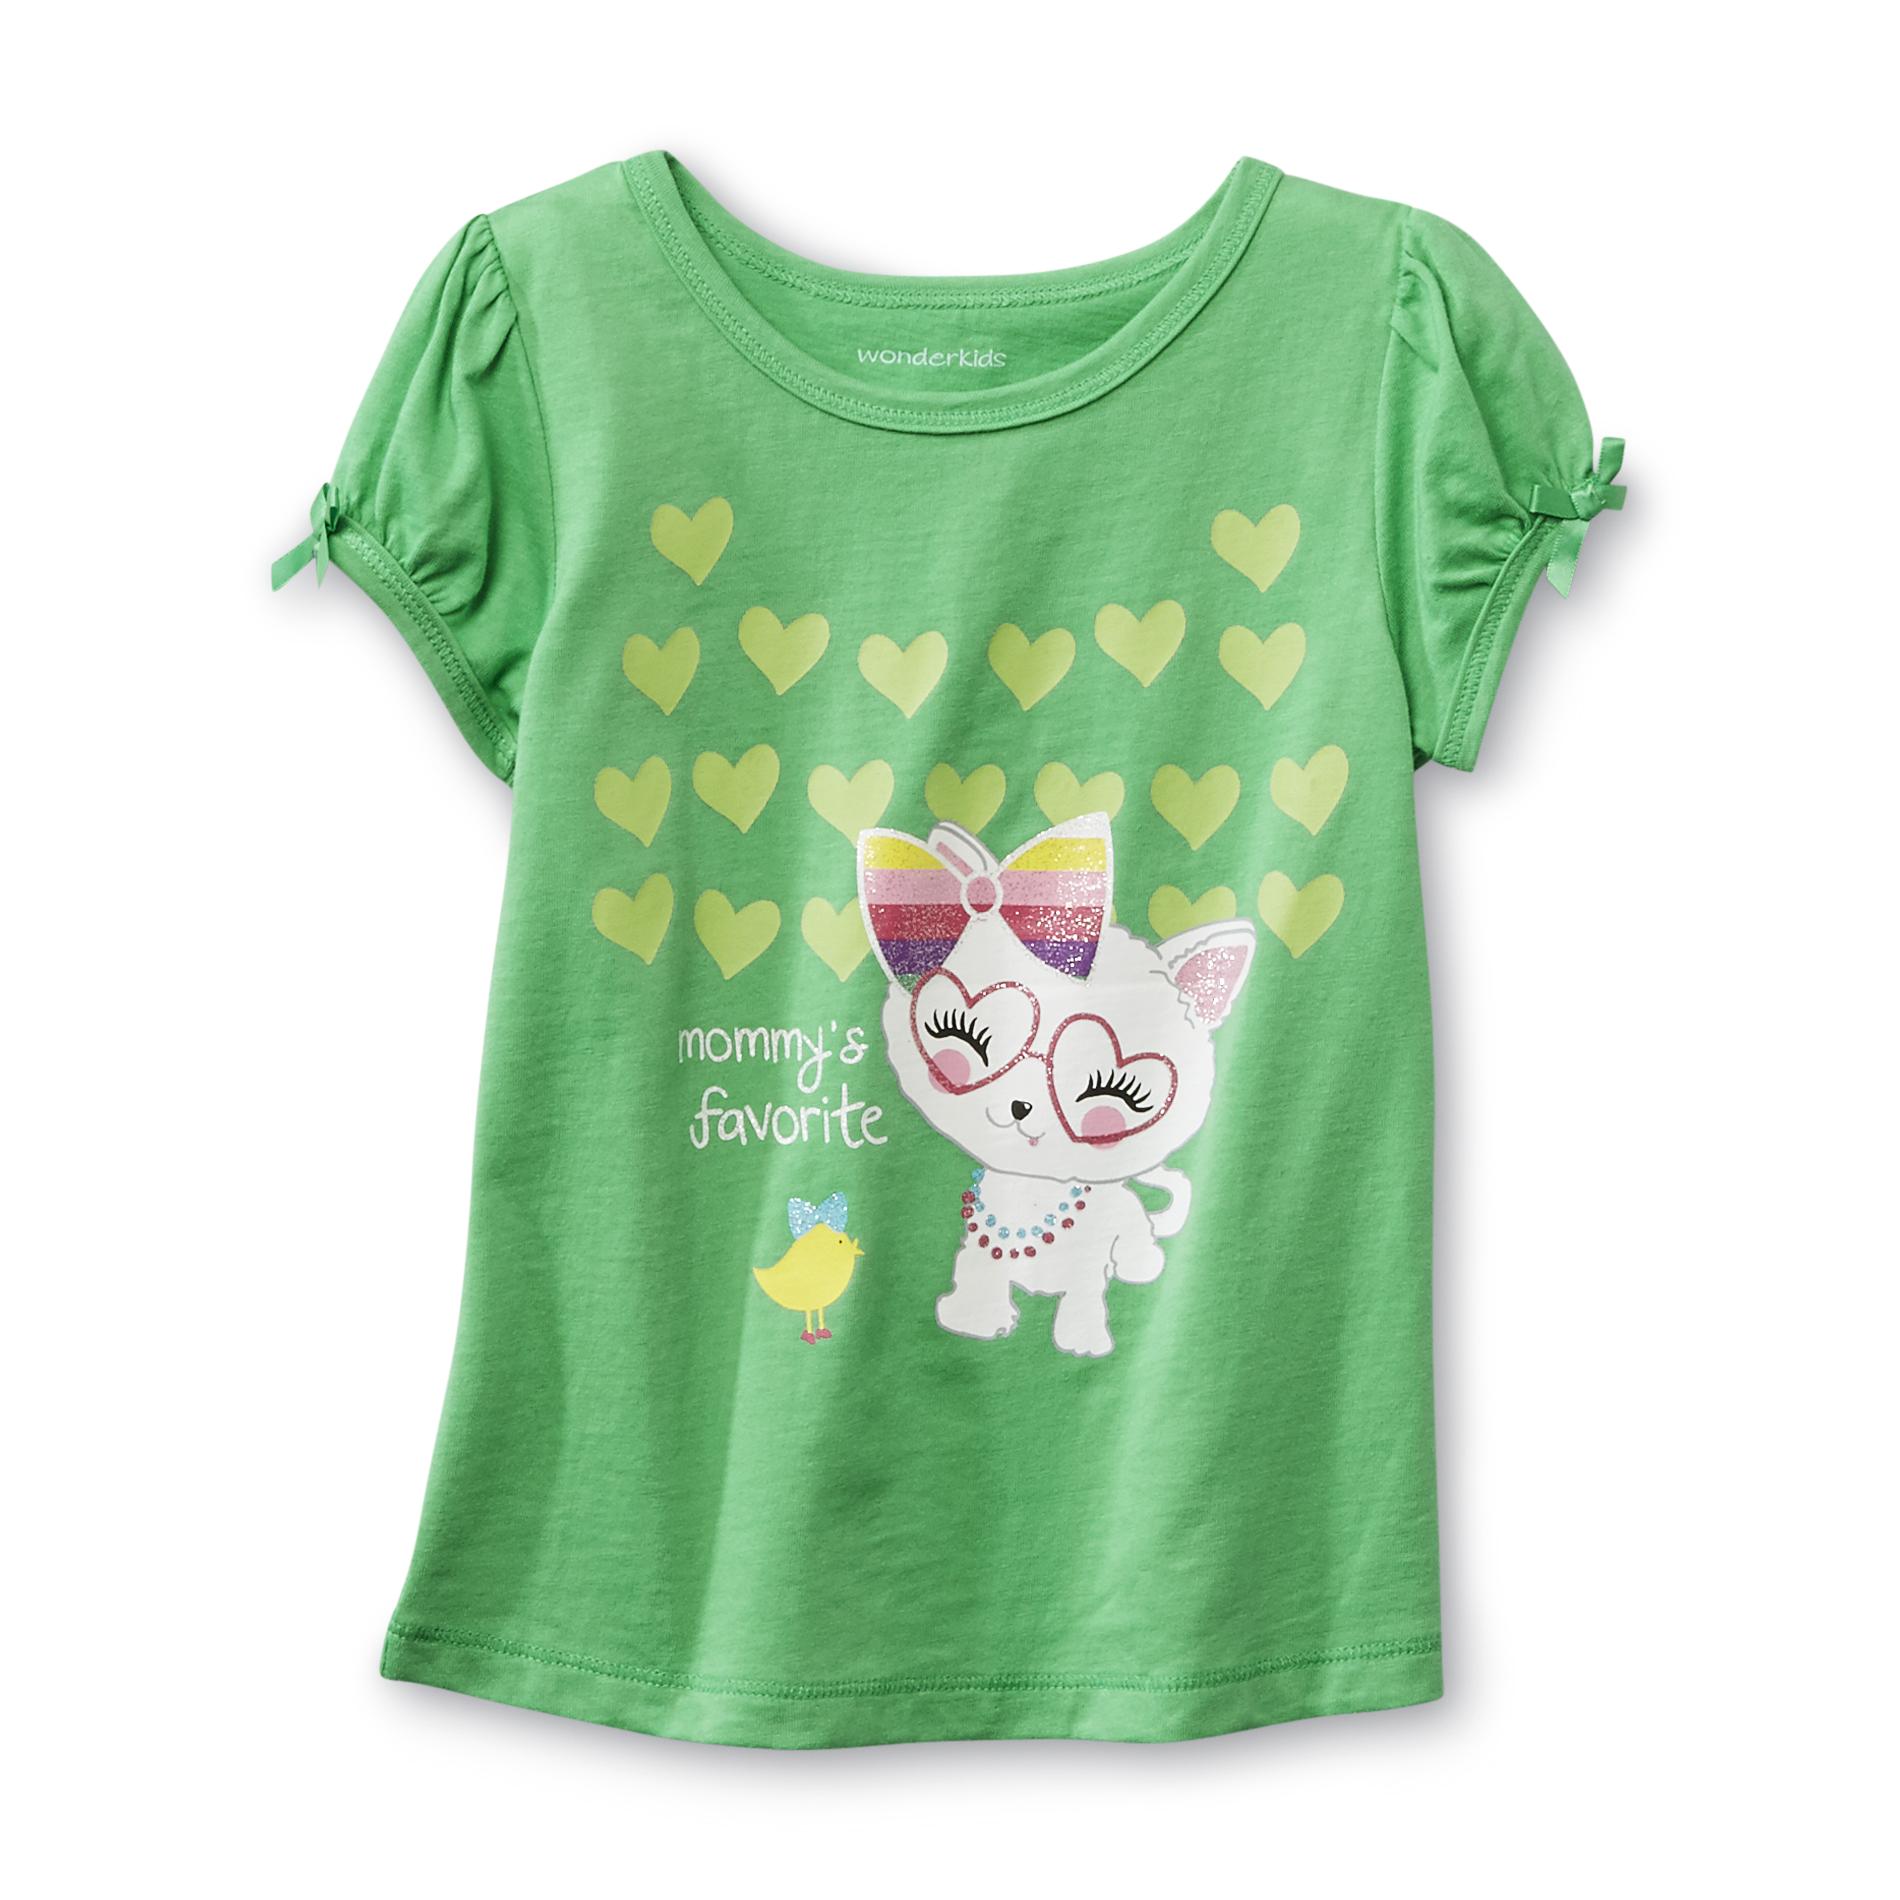 WonderKids Infant & Toddler Girl's Short-Sleeve Top - Kitty